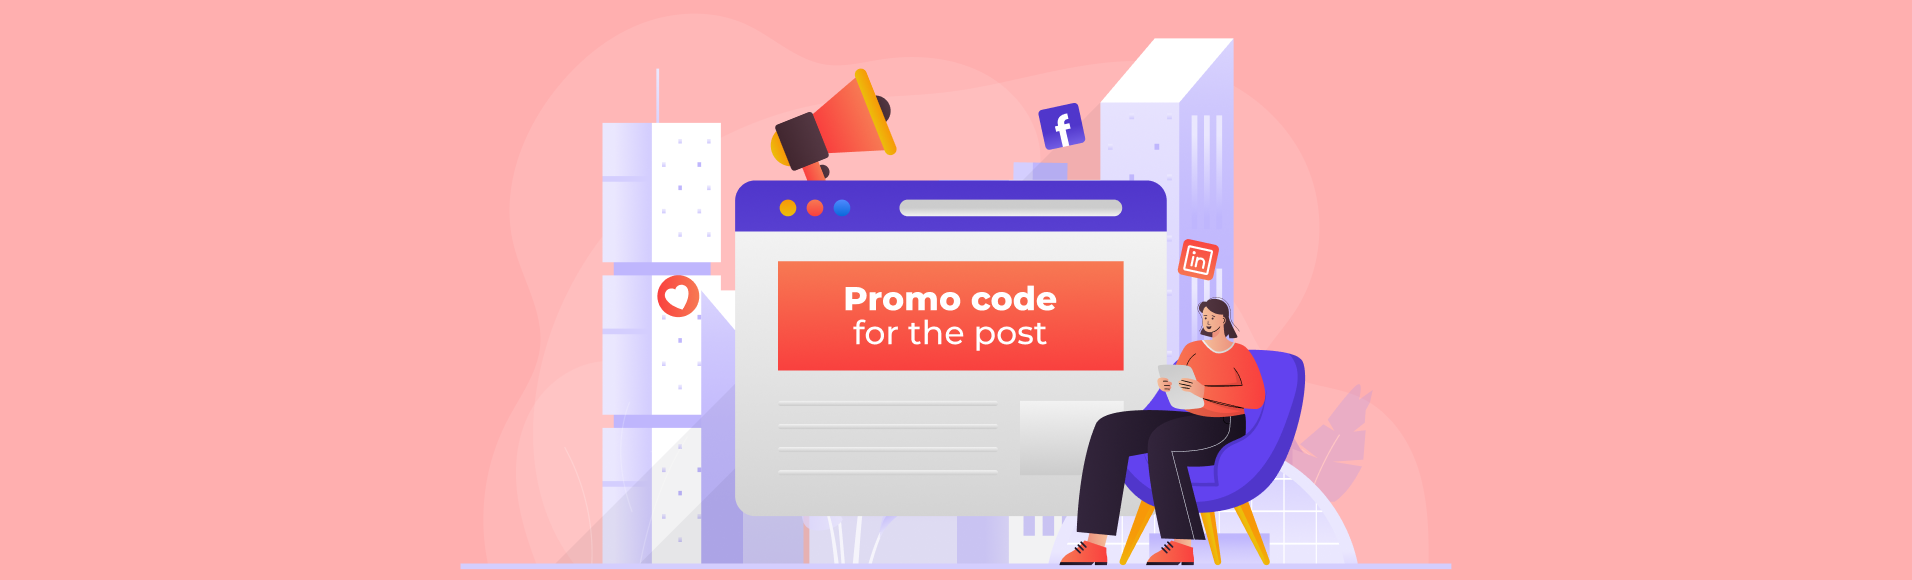 Mga tuntunin ng programa sa marketing na Promo code para sa post